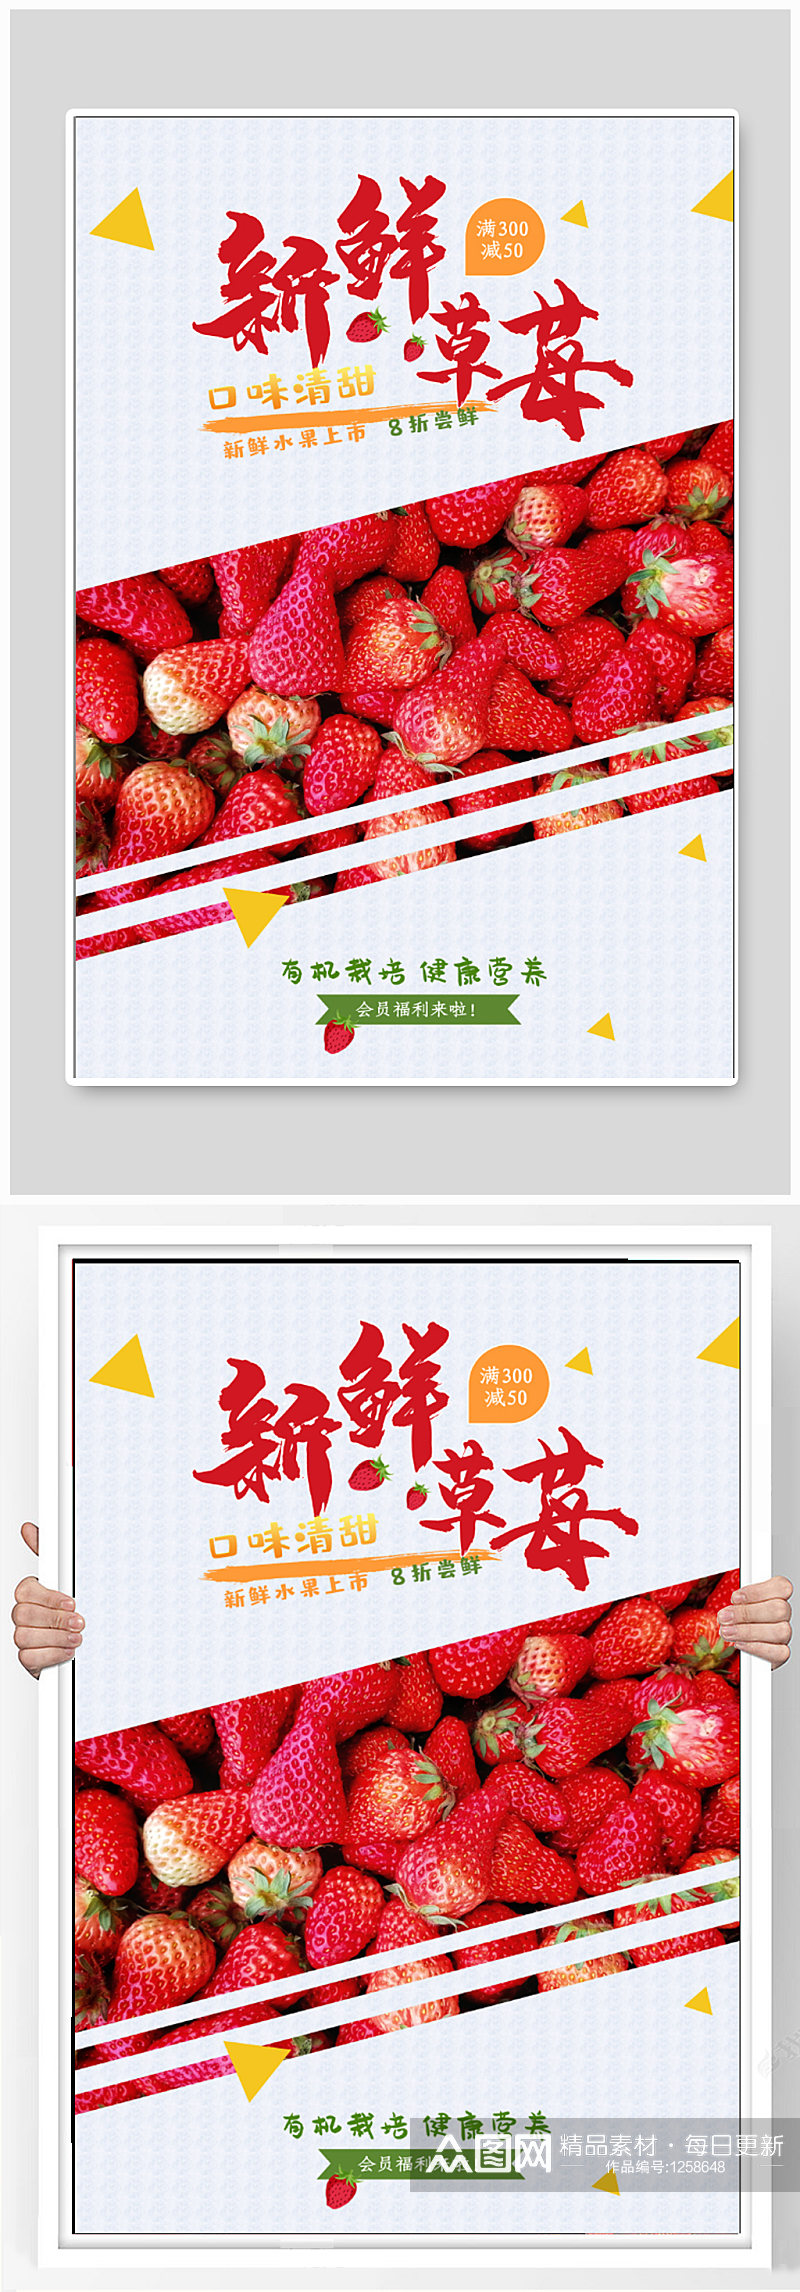 新鲜草莓水果促销海报素材